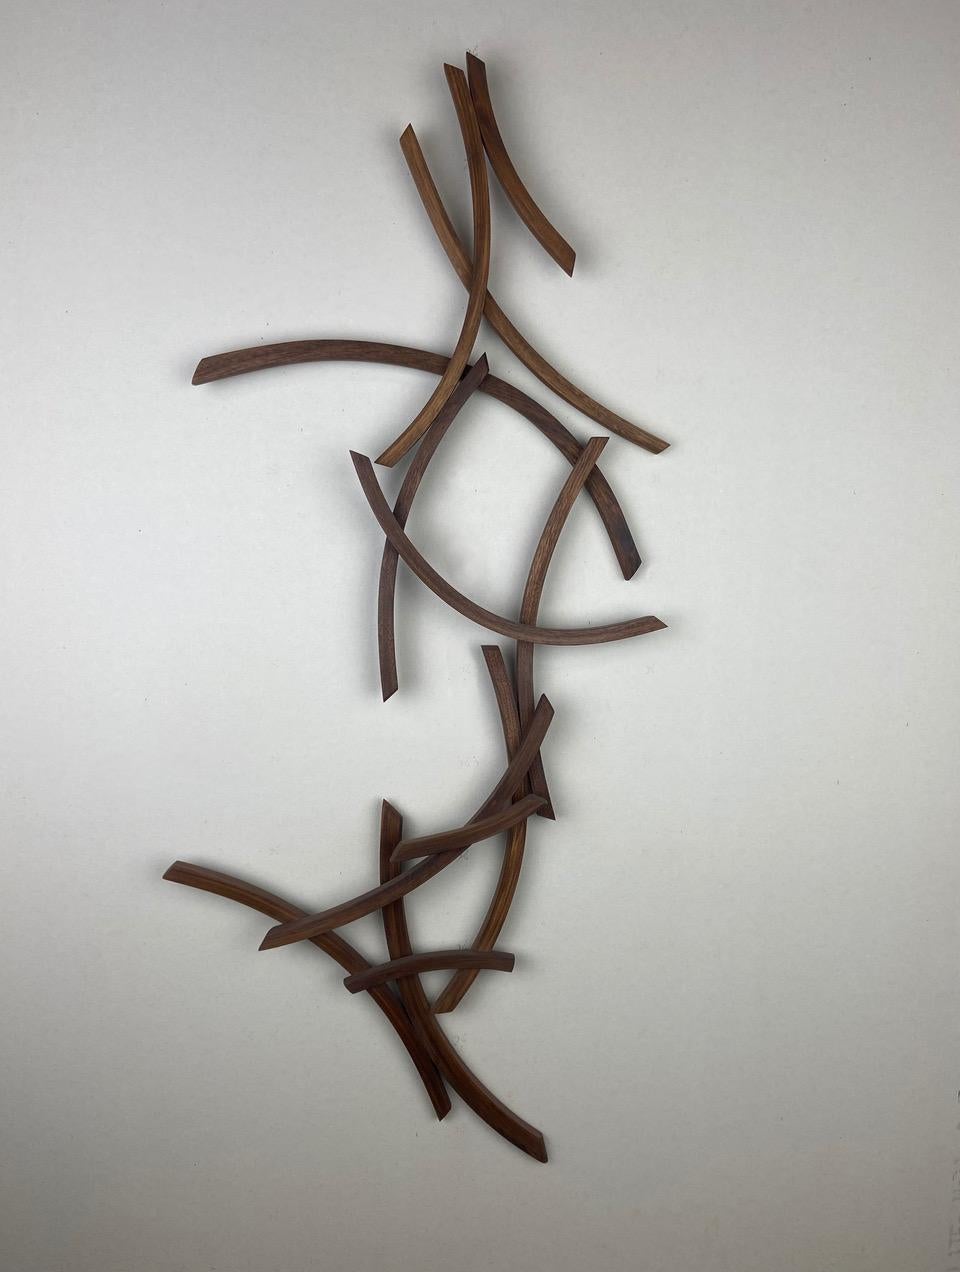 Medium: Nussbaum

Als Künstlerin strebe ich danach, elegante Skulpturen zu schaffen, die die wahre Essenz des Themas einfangen. Form, Linie und Oberfläche werden als visuelle Sprache verwendet. Die Figur ist zu einer minimalistischen Form